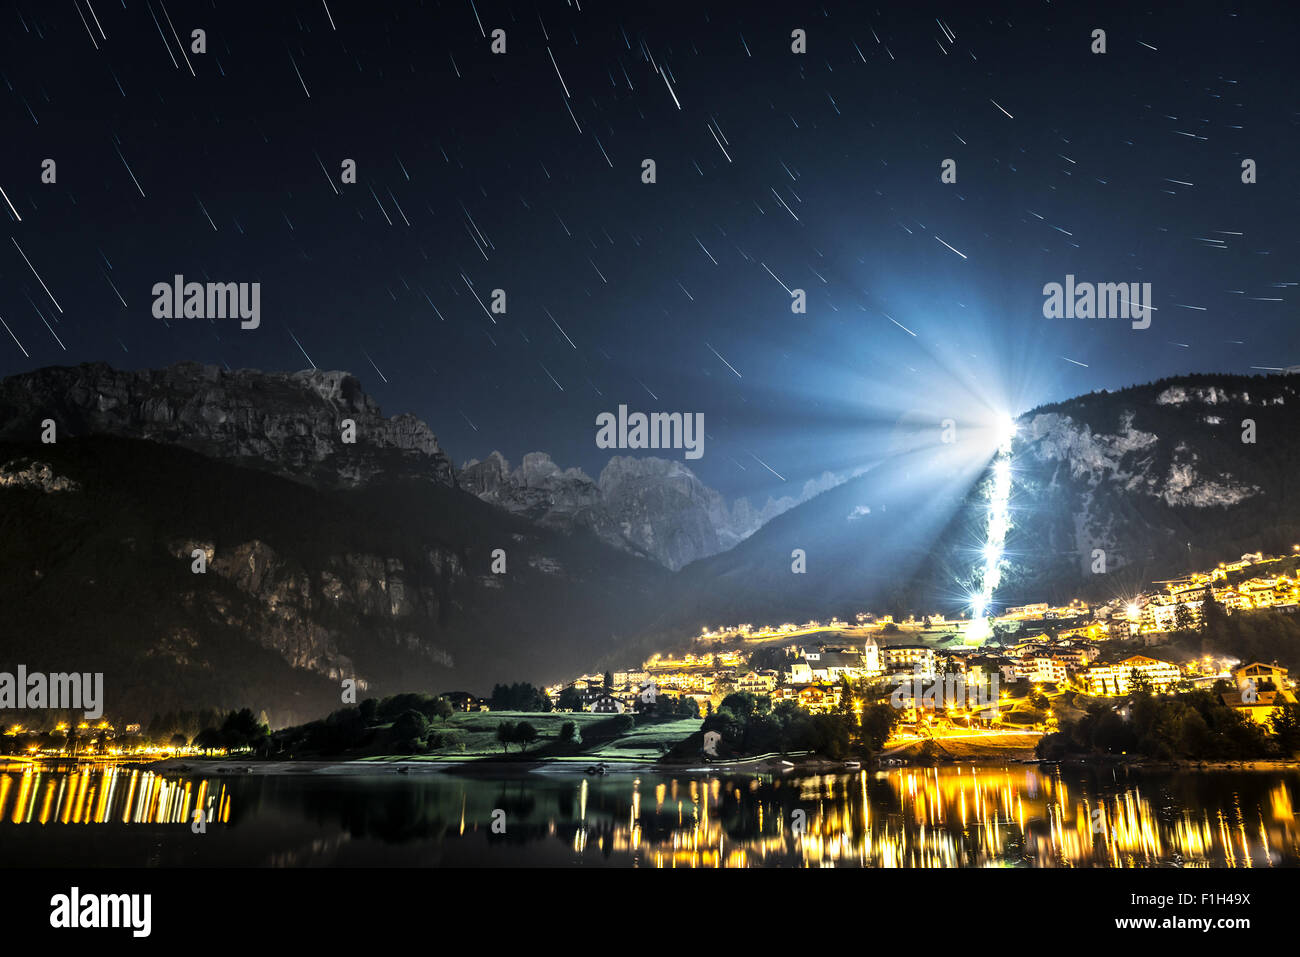 Paesaggio notturno sul lago Moveno e città con Dolomiti del Gruppo del Brenta in background al chiaro di luna e tracce stellari Foto Stock